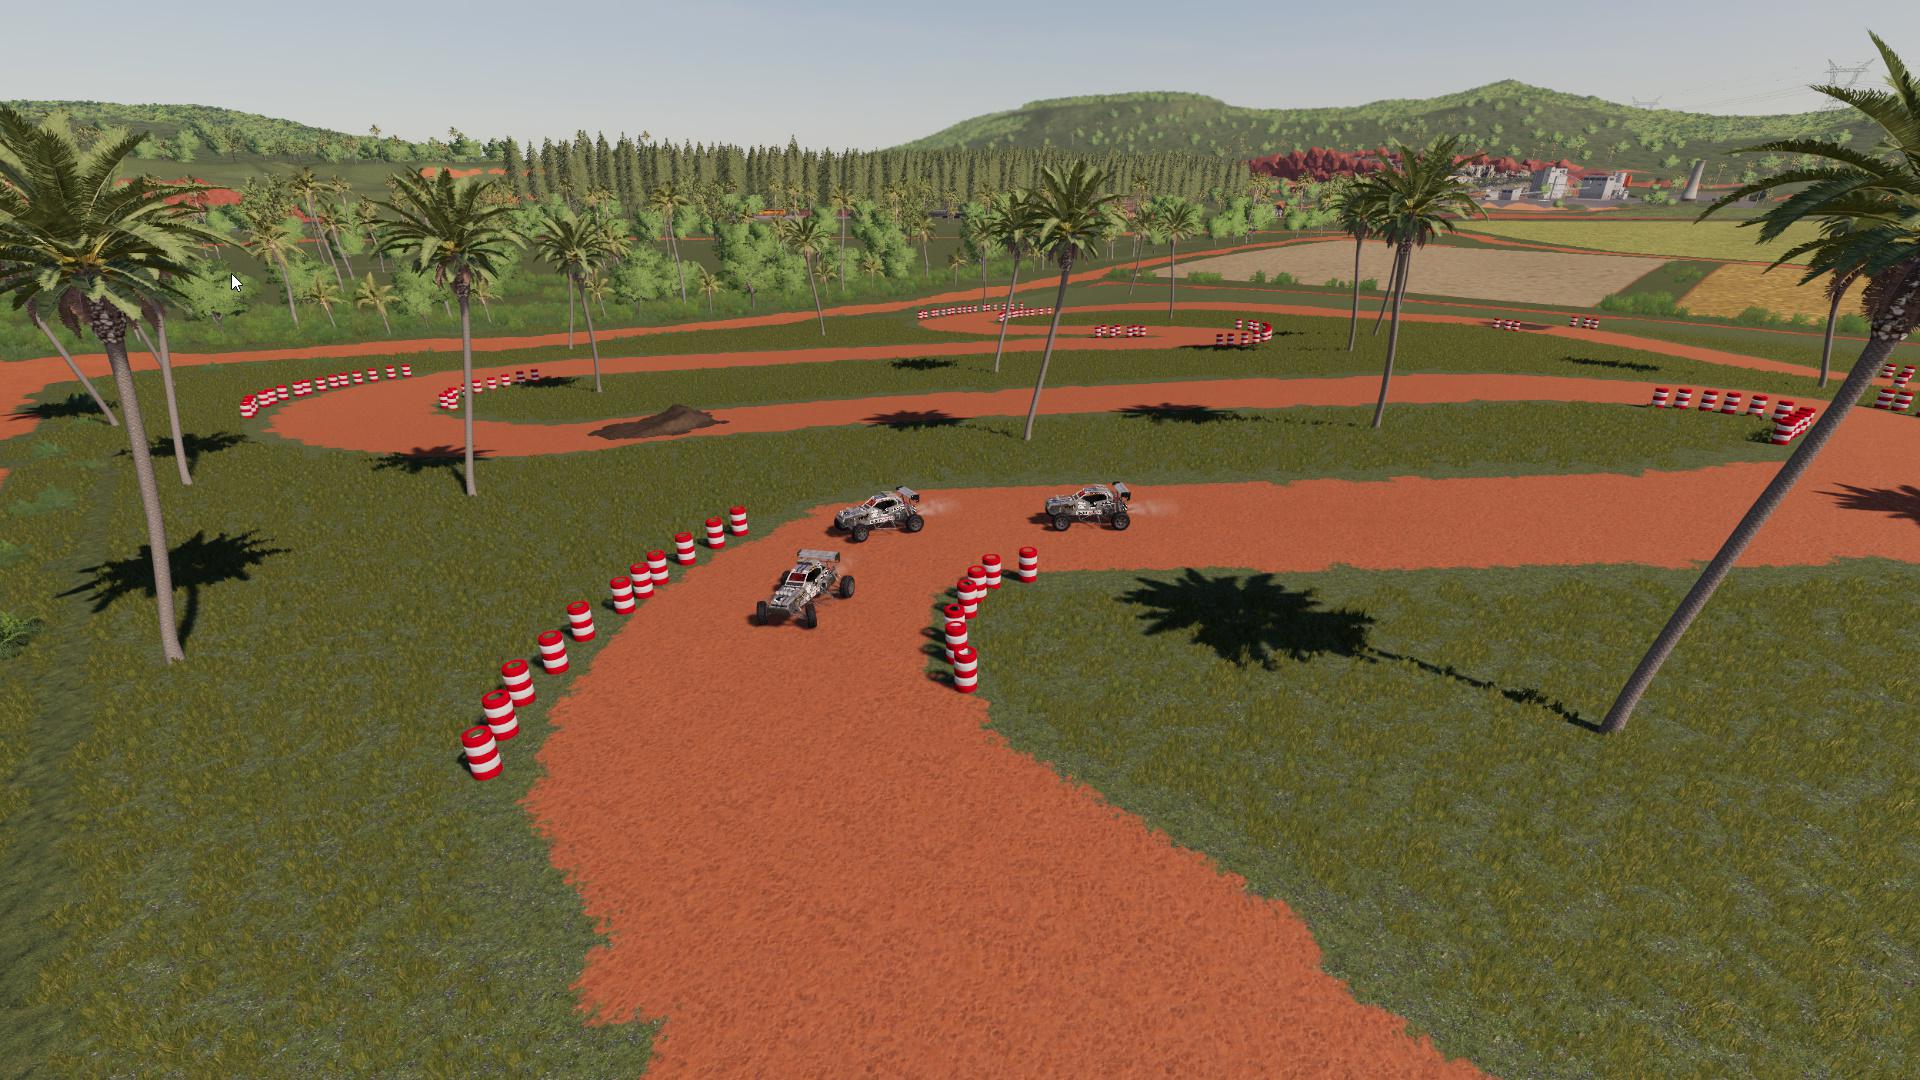 farming simulator 19 race car